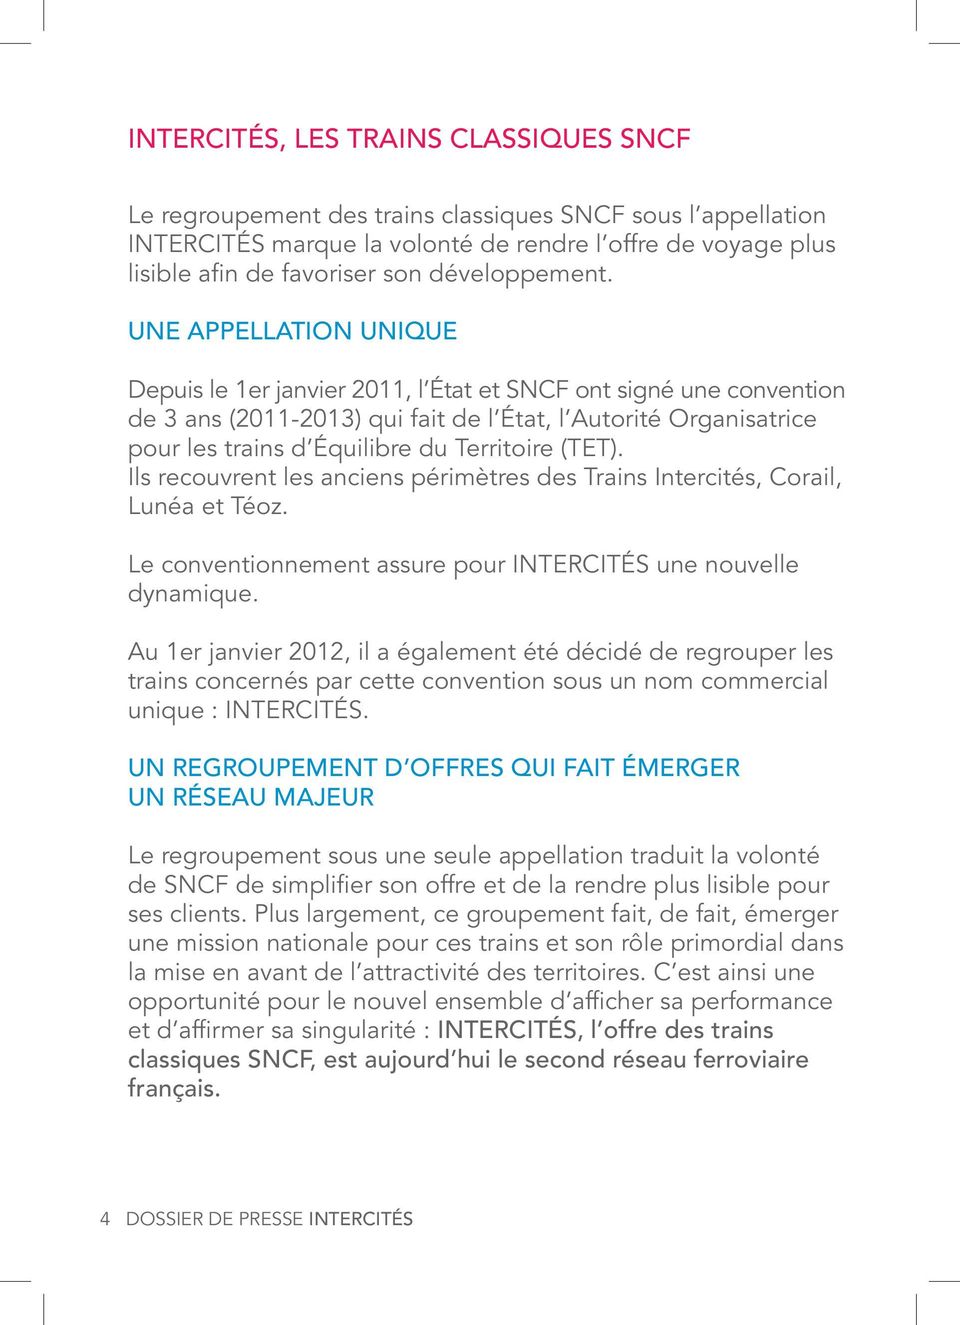 UNE APPELLATION UNIQUE Depuis le 1er janvier 2011, l État et SNCF ont signé une convention de 3 ans (2011-2013) qui fait de l État, l Autorité Organisatrice pour les trains d Équilibre du Territoire